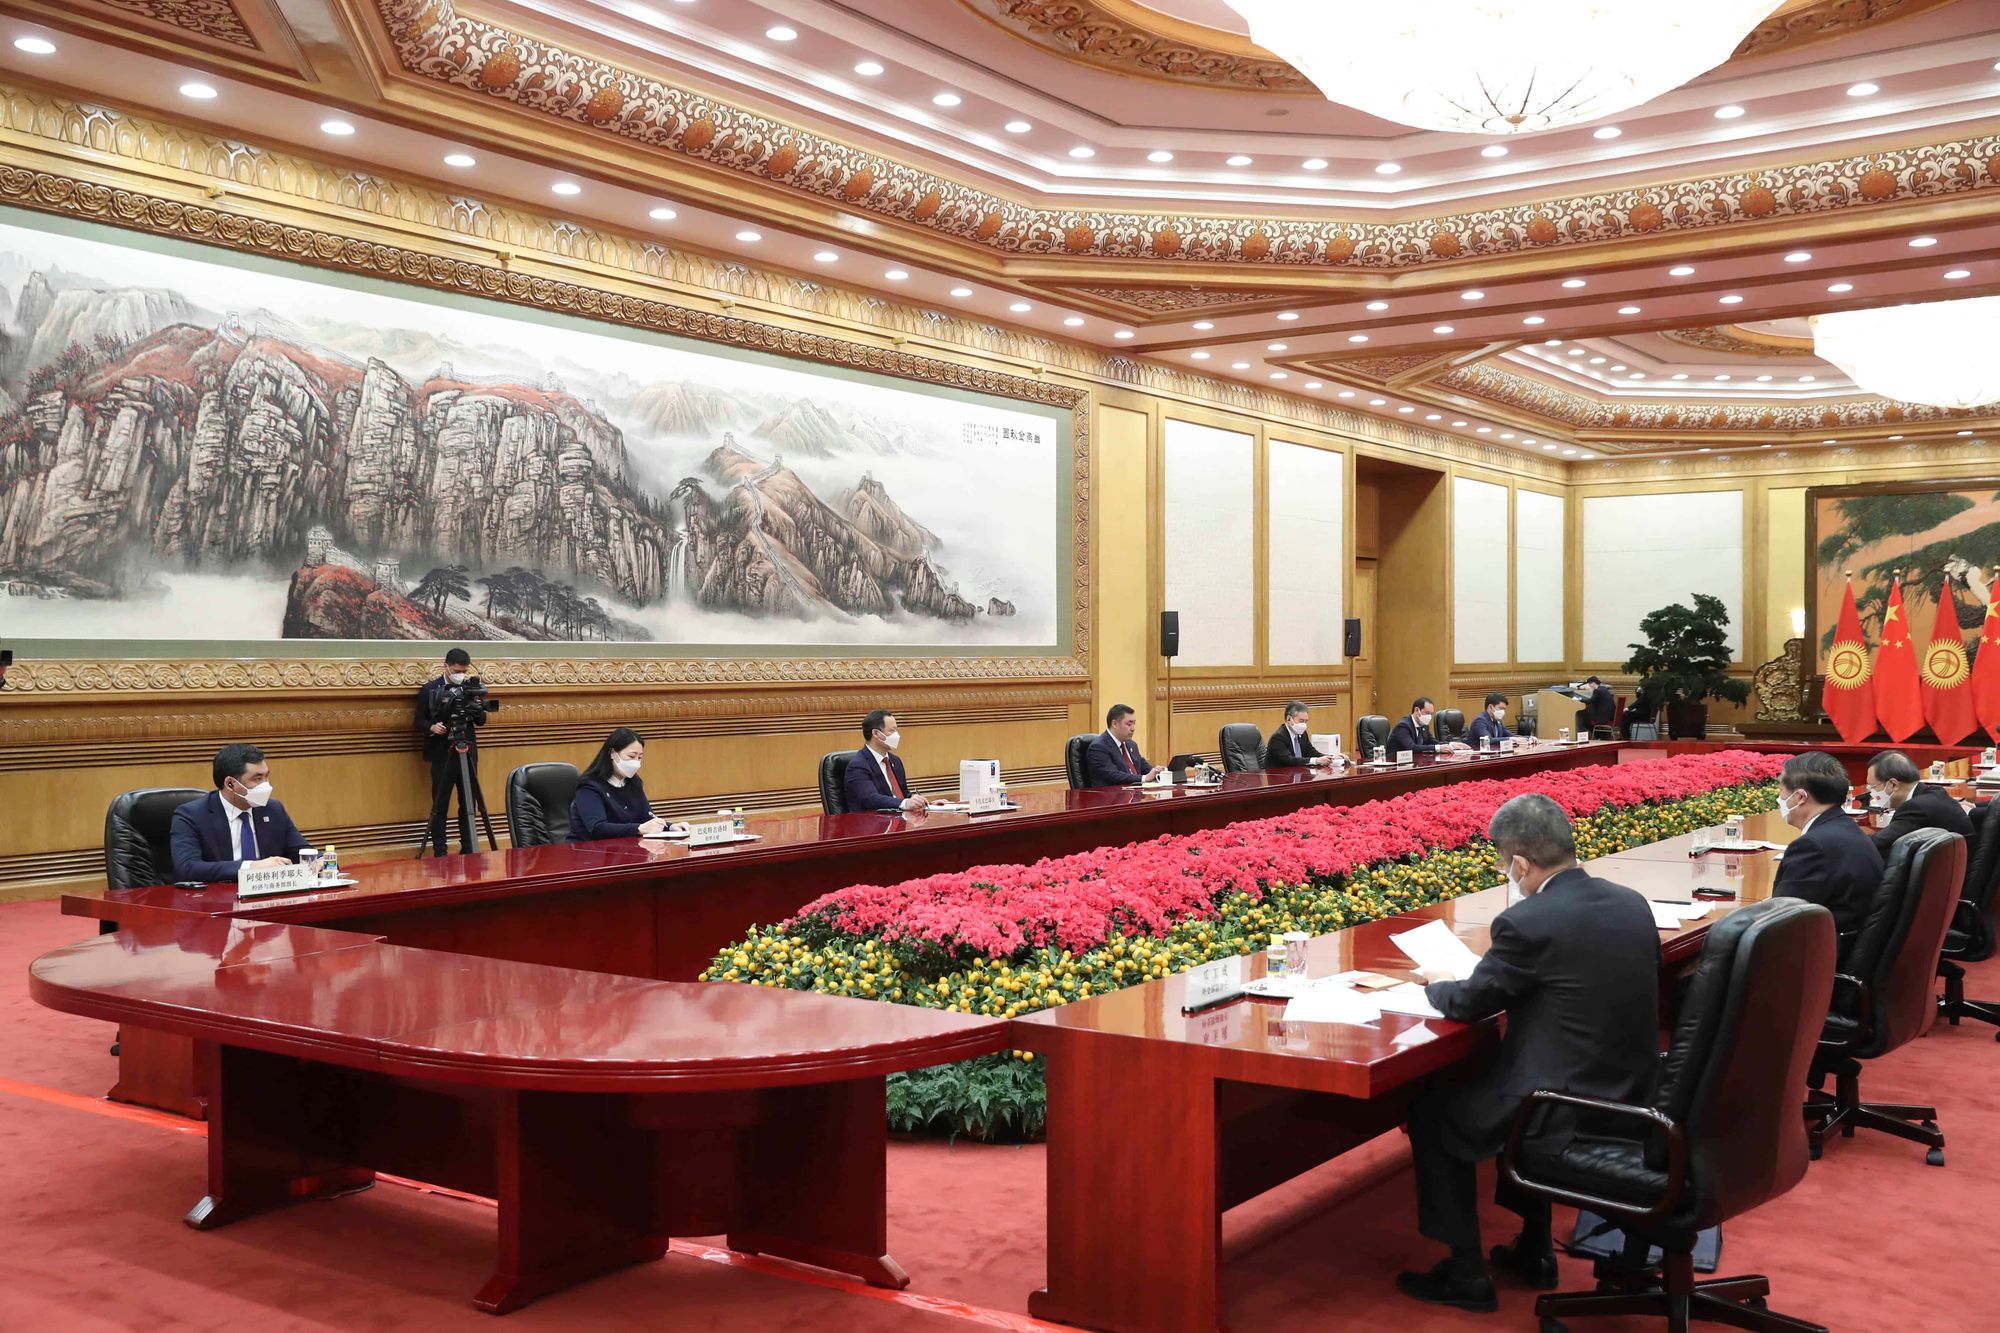 Экспорт сои и зеленая экономика — какие документы подписали в Пекине?